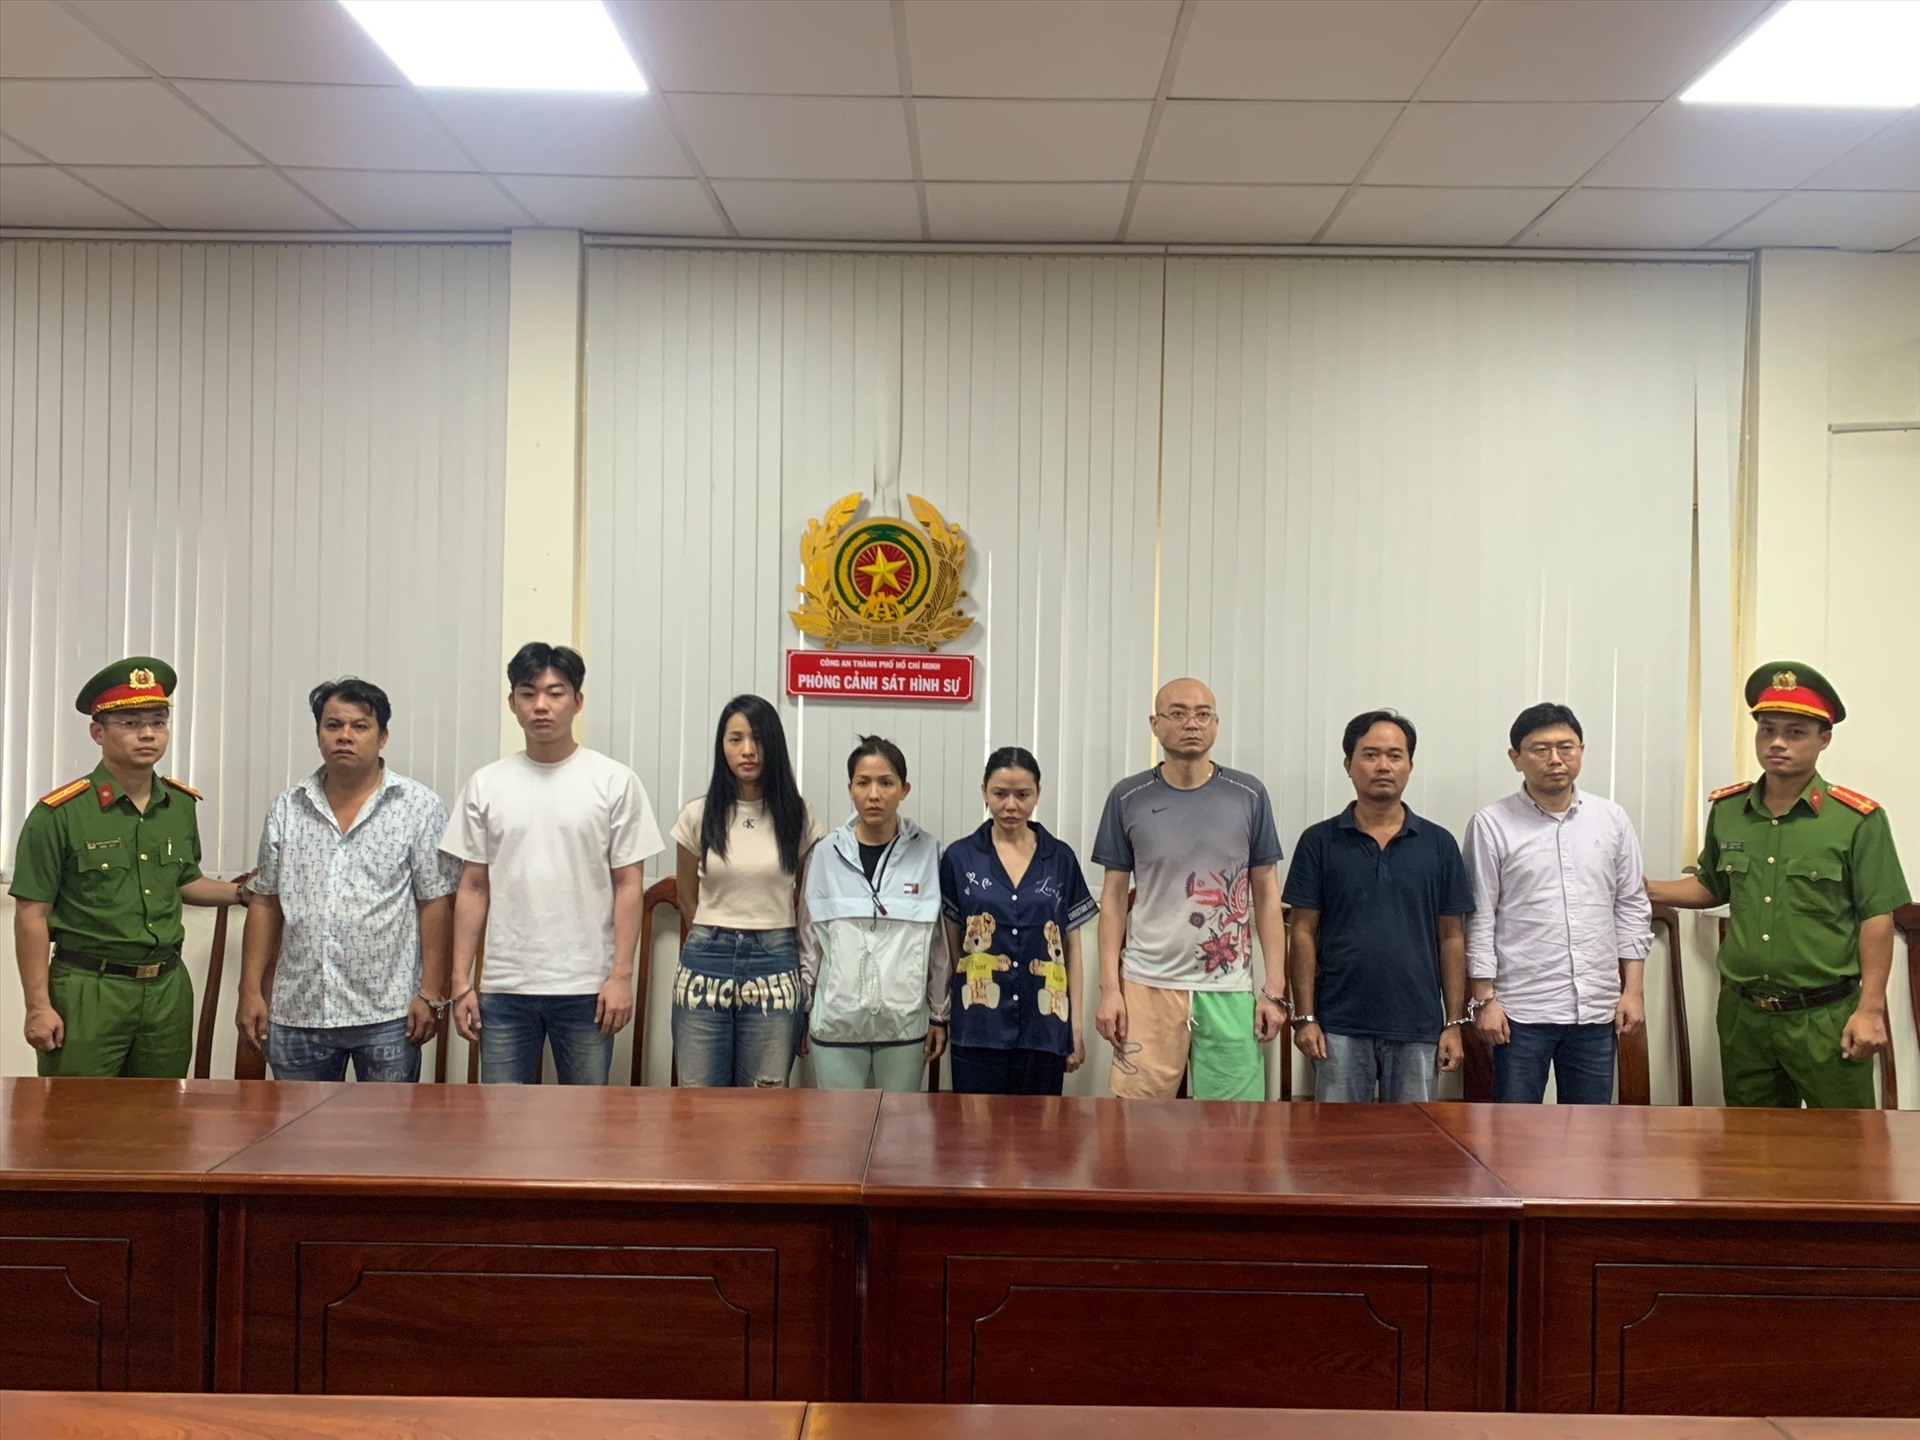 Cơ quan Cảnh sát điều tra Công an TP Hồ Chí Minh ra lệnh bắt khẩn cấp và tạm giữ các đối tượng về hành vi Môi giới mại dâm và Lừa đảo chiếm đoạt tài sản. Ảnh: CACC 